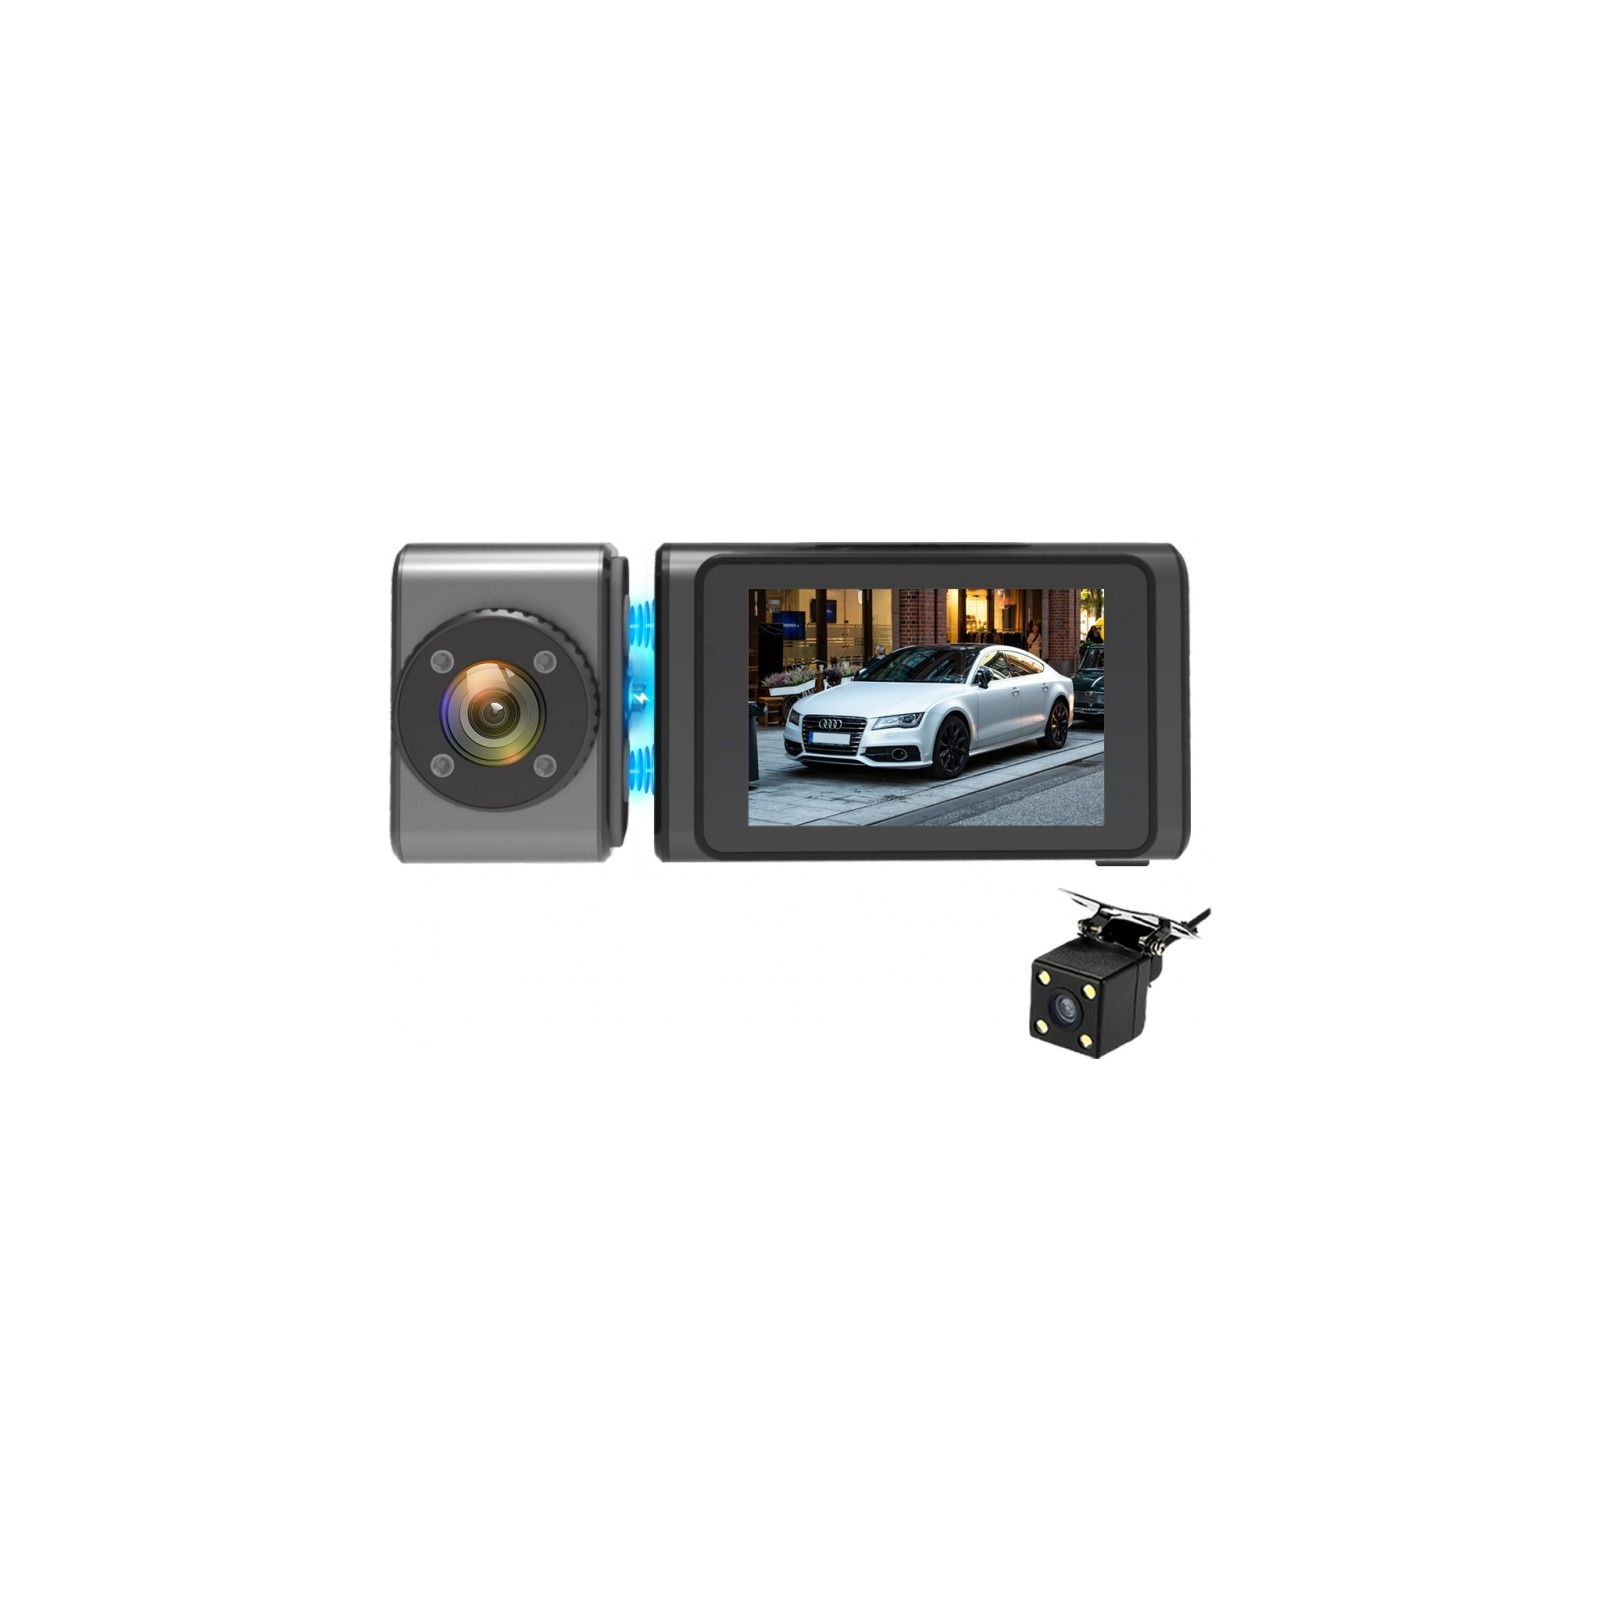 Відеореєстратор Aspiring Alibi 9 GPS, 3 Cameras, Speedcam (Aspiring Alibi 9 GPS, 3 Cameras, Speedcam) зображення 7